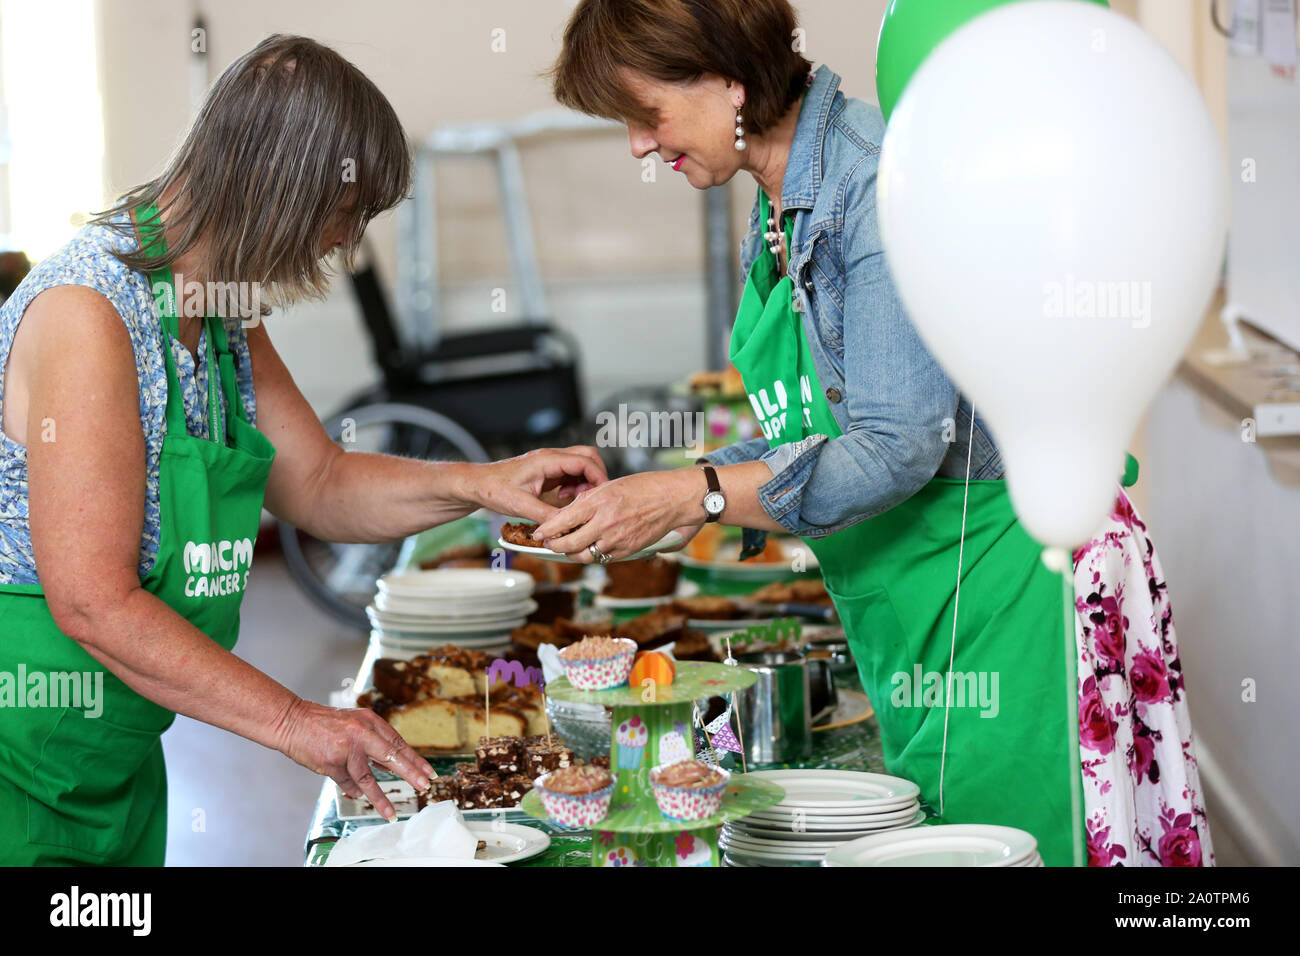 Macmillan Cancer Support tea party nella foto a Bognor Regis, West Sussex, Regno Unito. Foto Stock